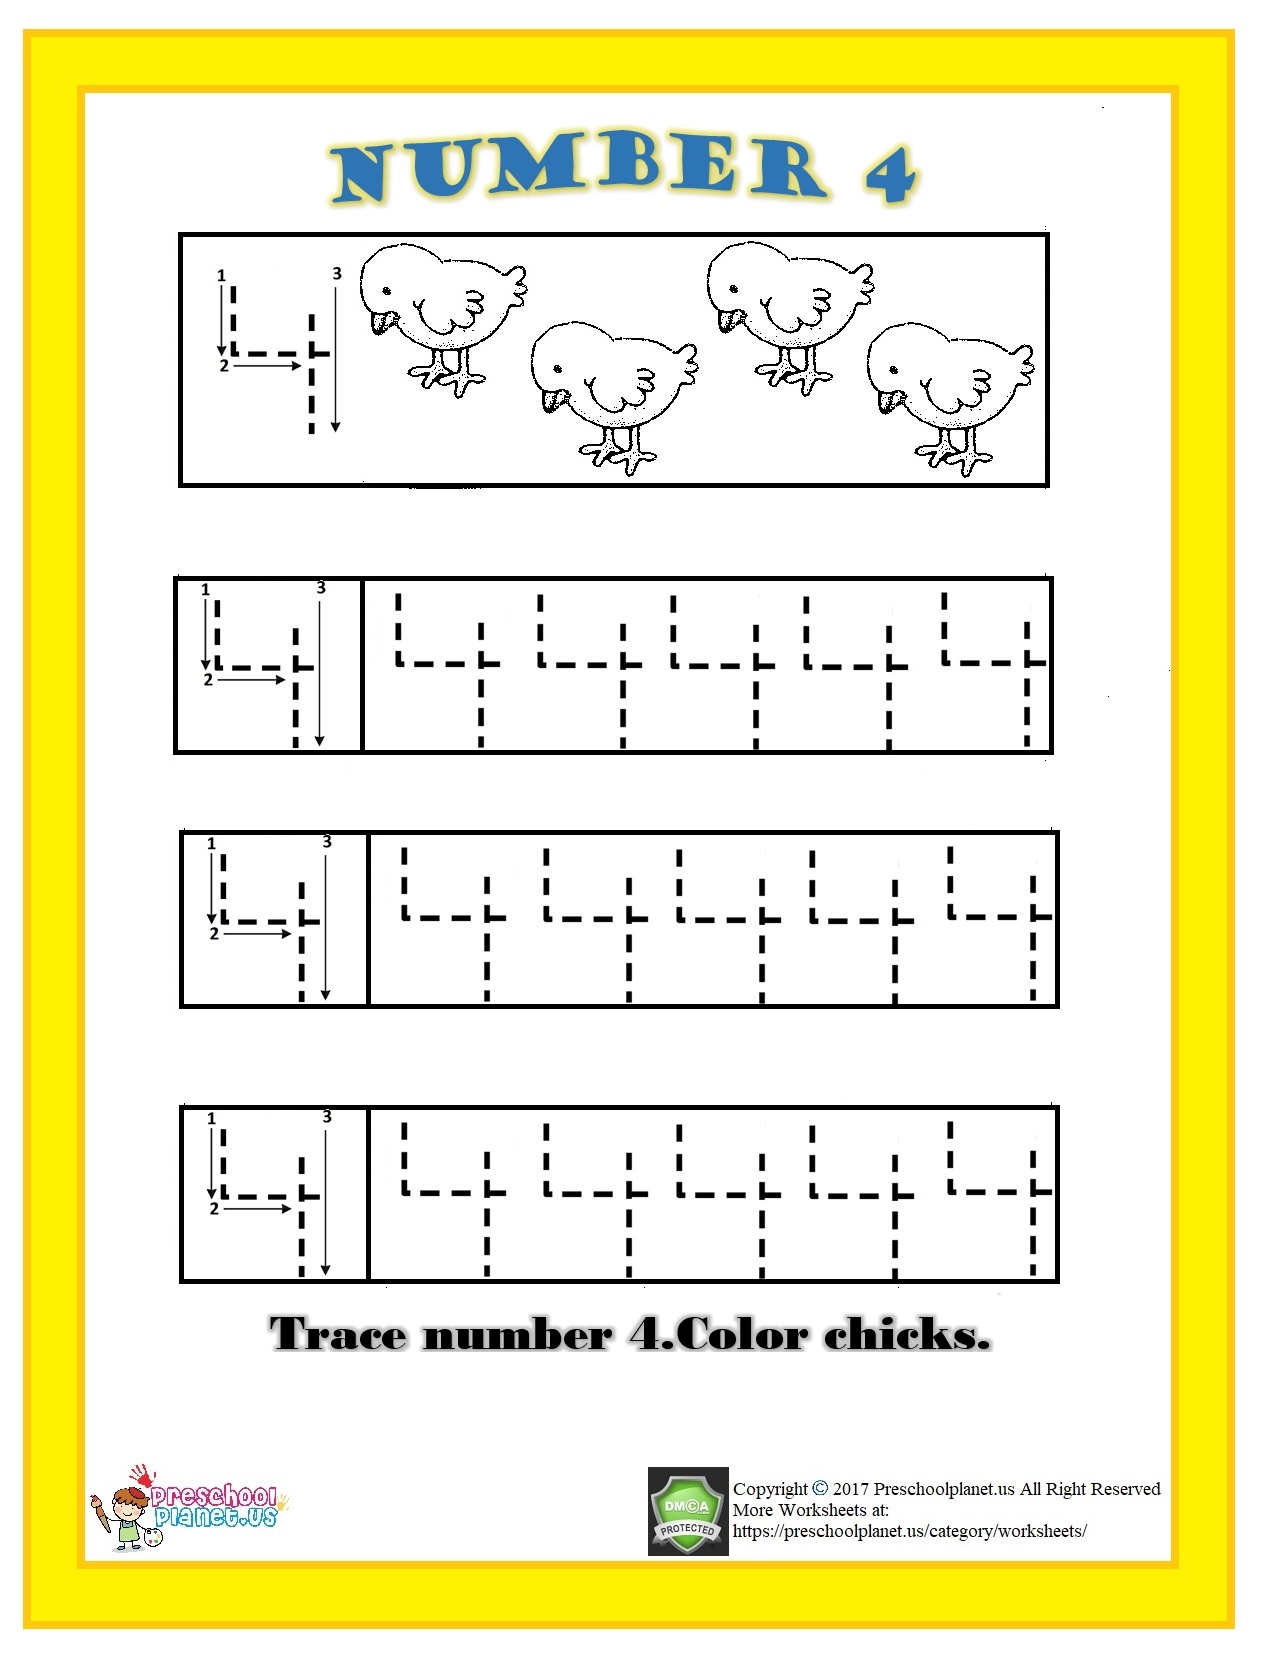 Number 4 Trace Worksheet For Kids Preschoolplanet Number 4 Tracing Worksheets For Preschool